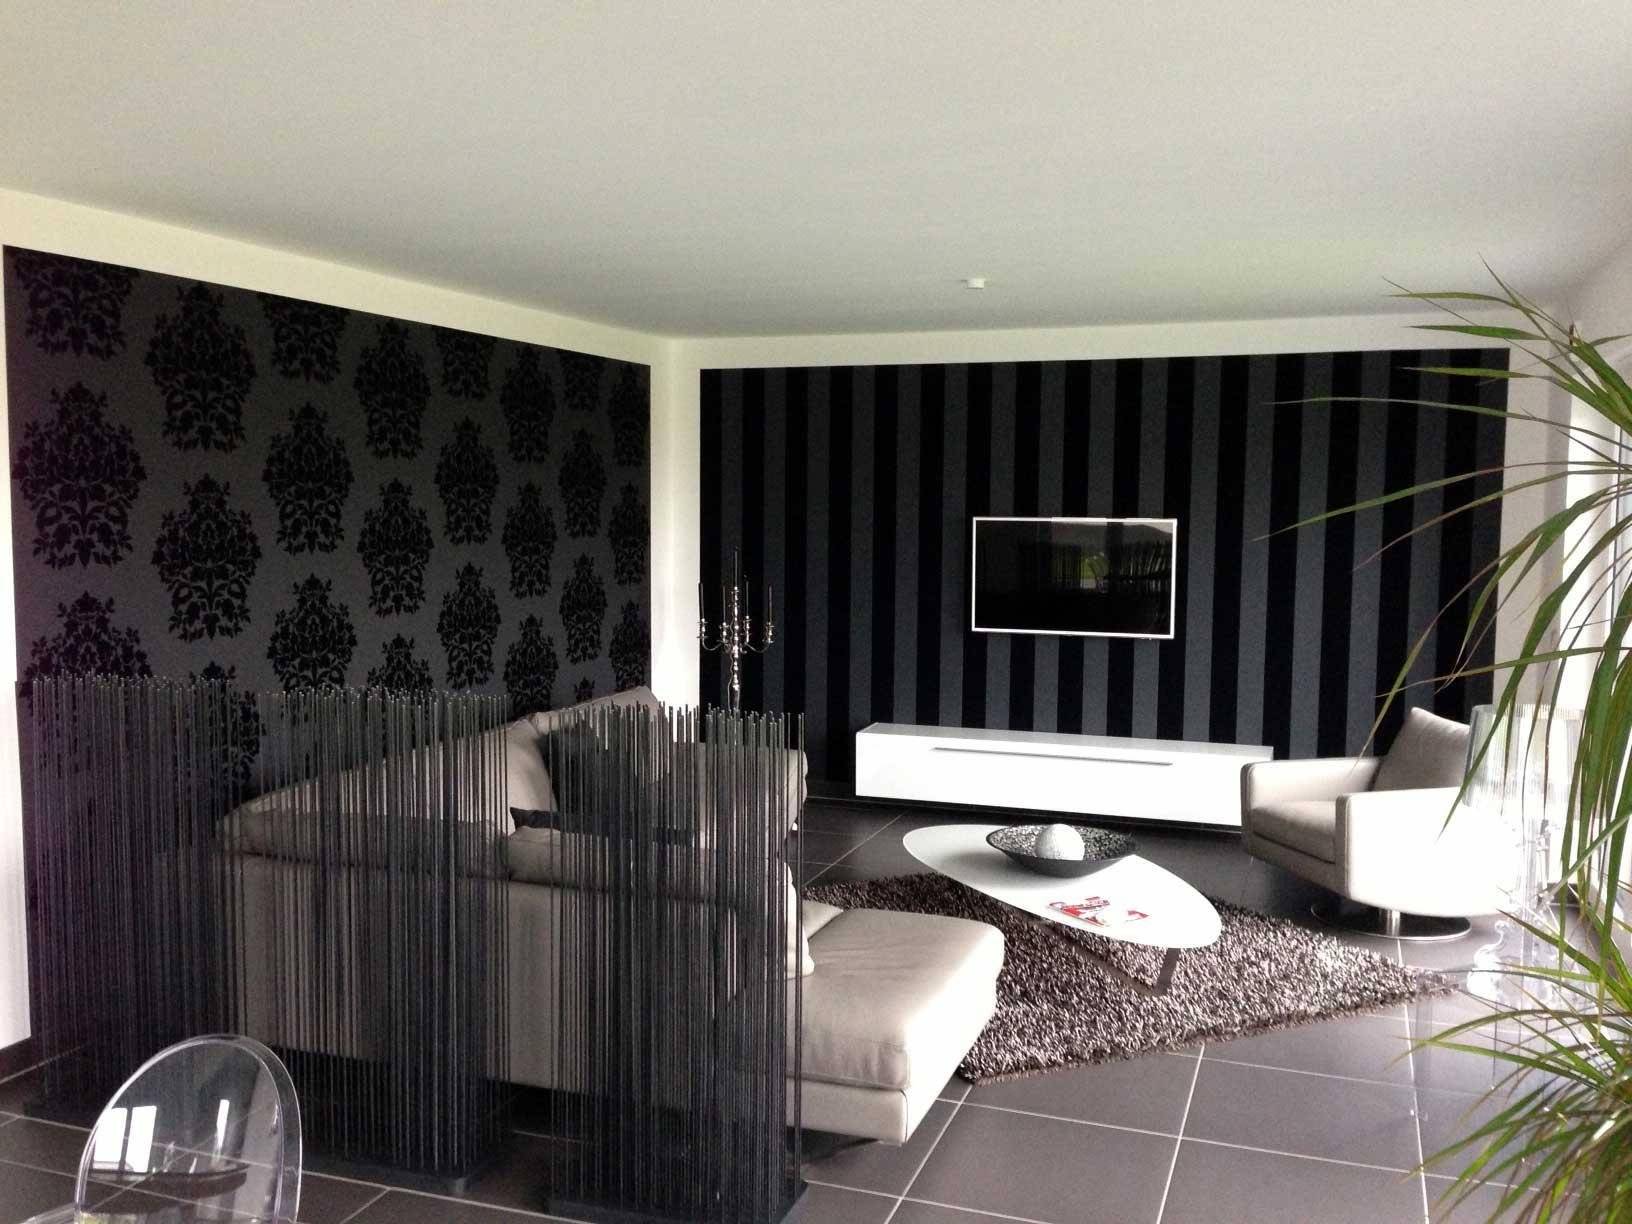 Обои в гостиную двух цветов, как подобрать комбинированные для зала, темный дизайн стен в интерьере, современные модные варианты